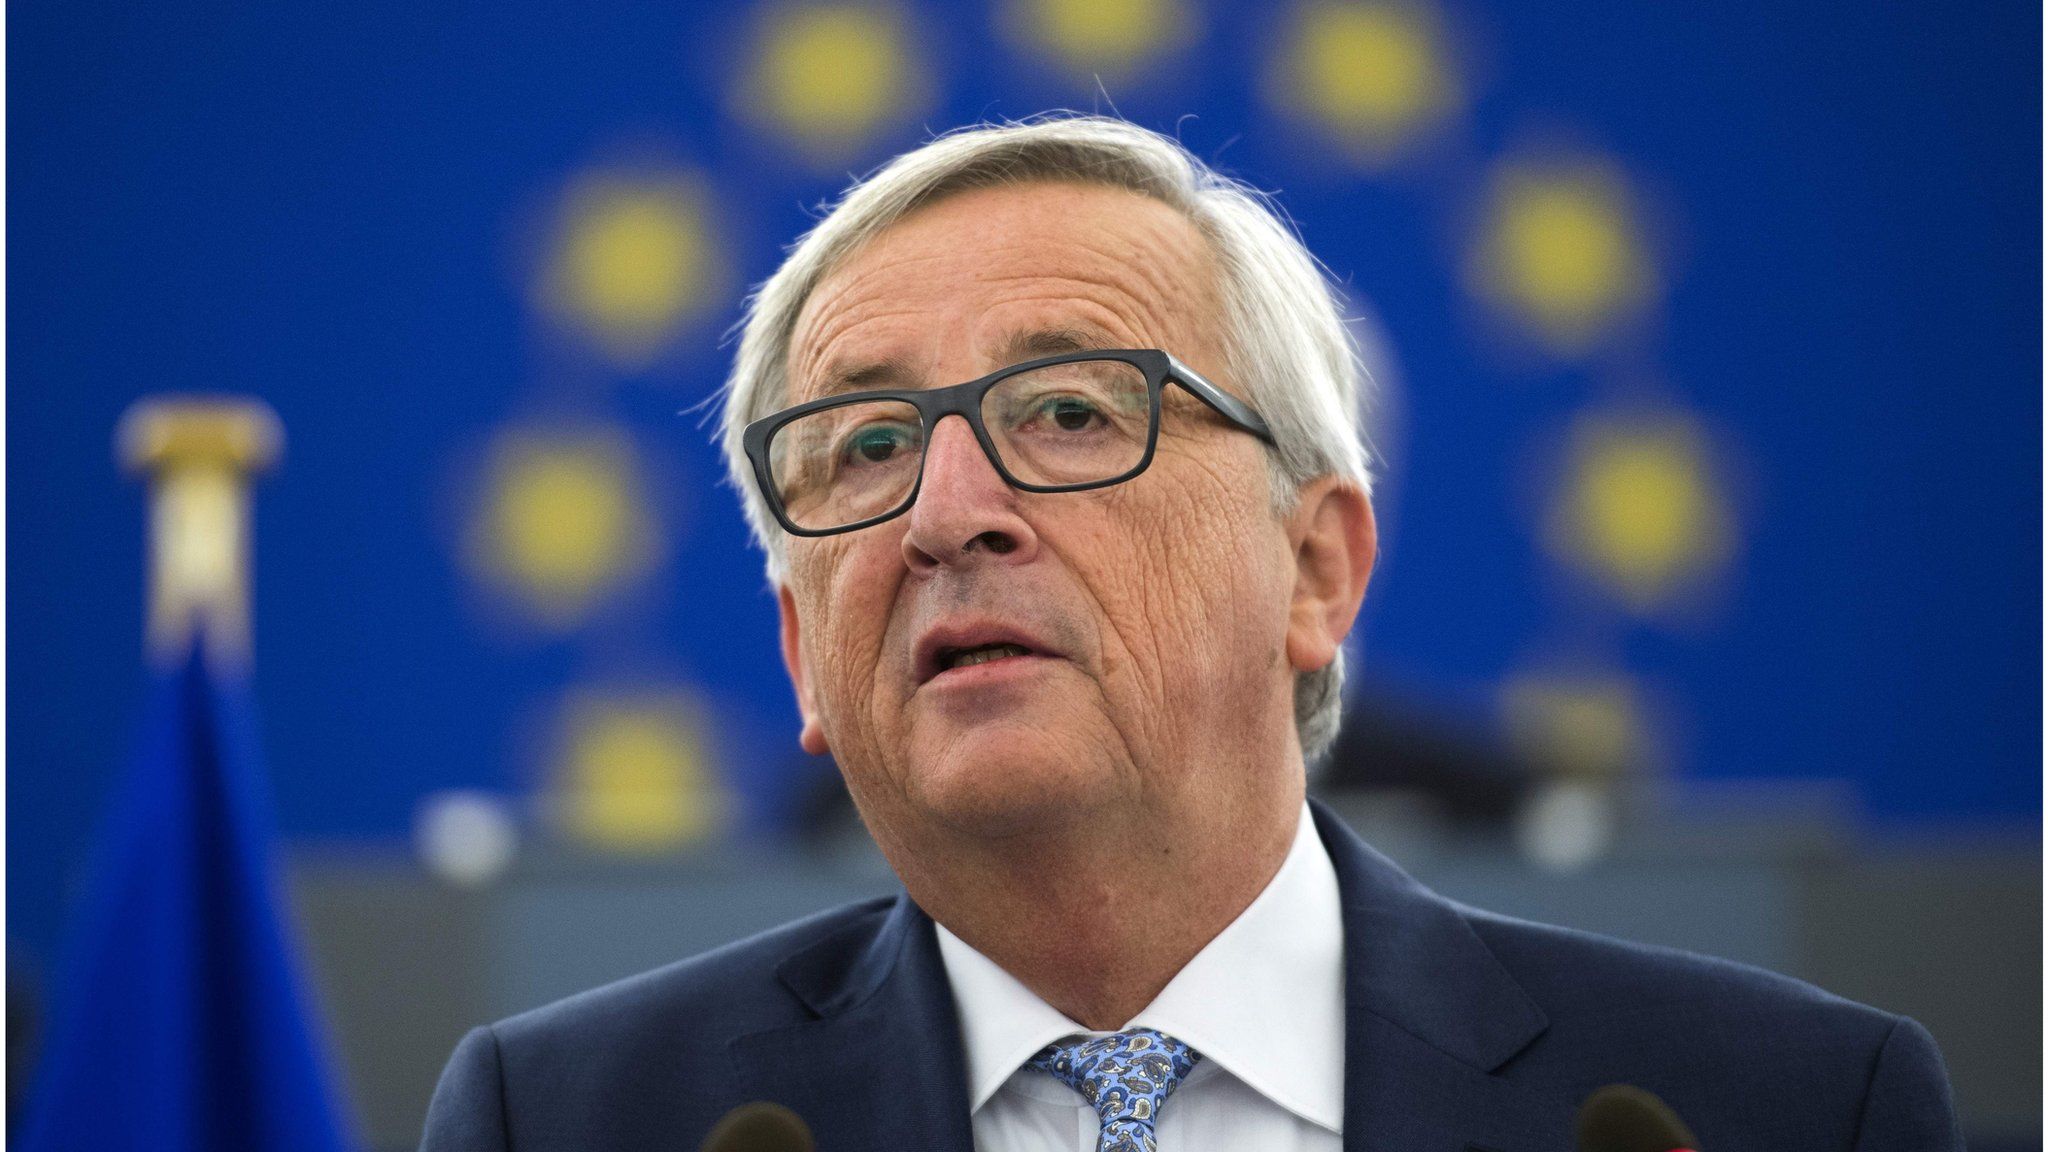 Jean-Claude Juncker at the European Parliament